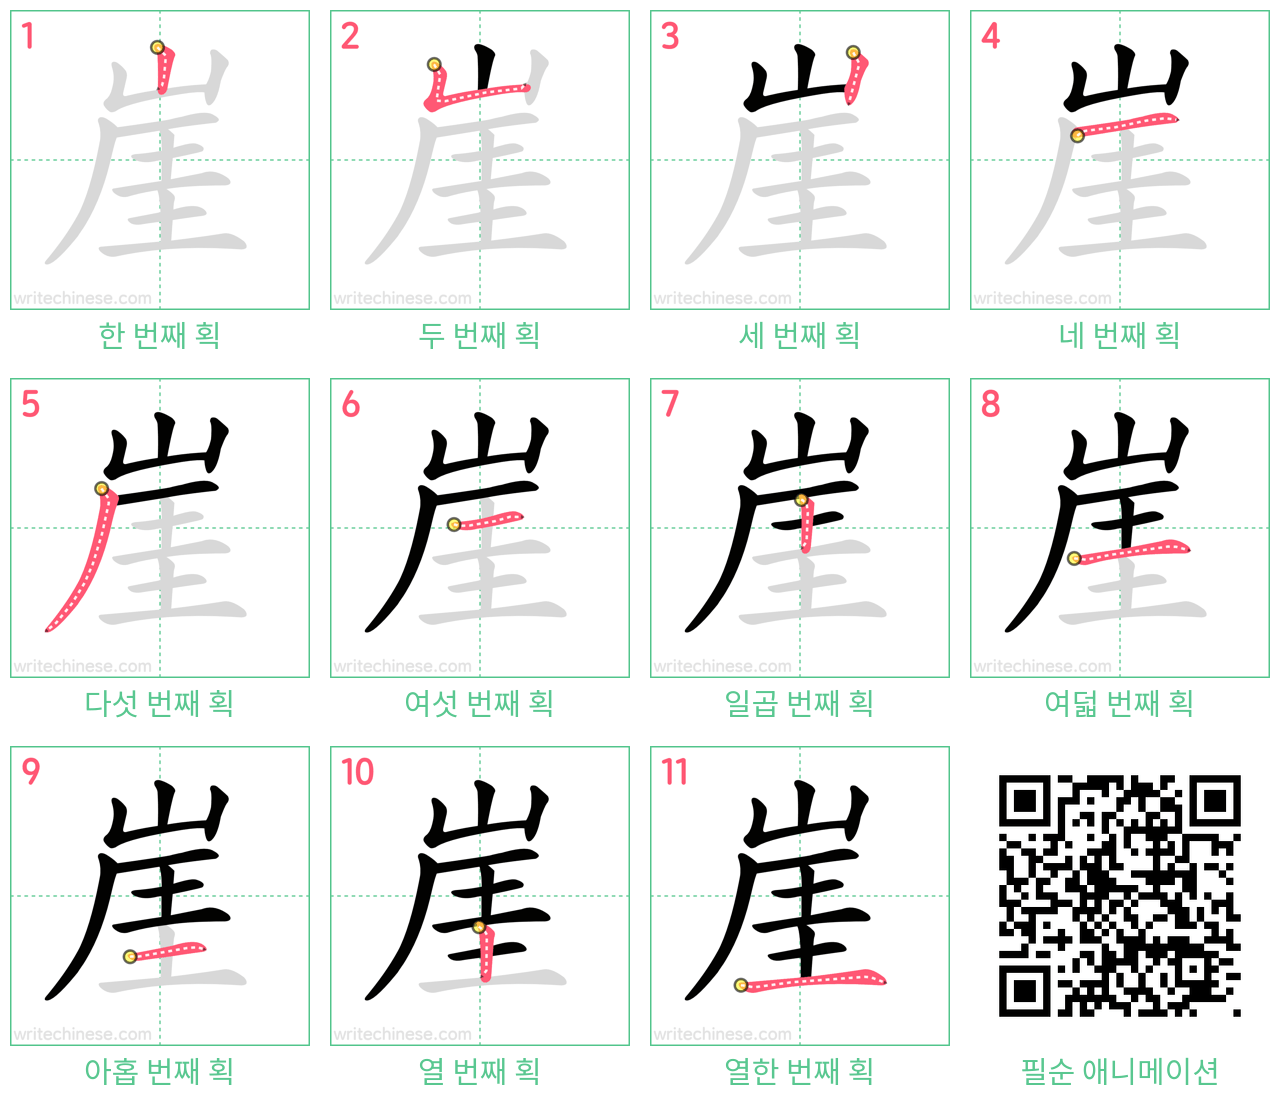 崖 step-by-step stroke order diagrams